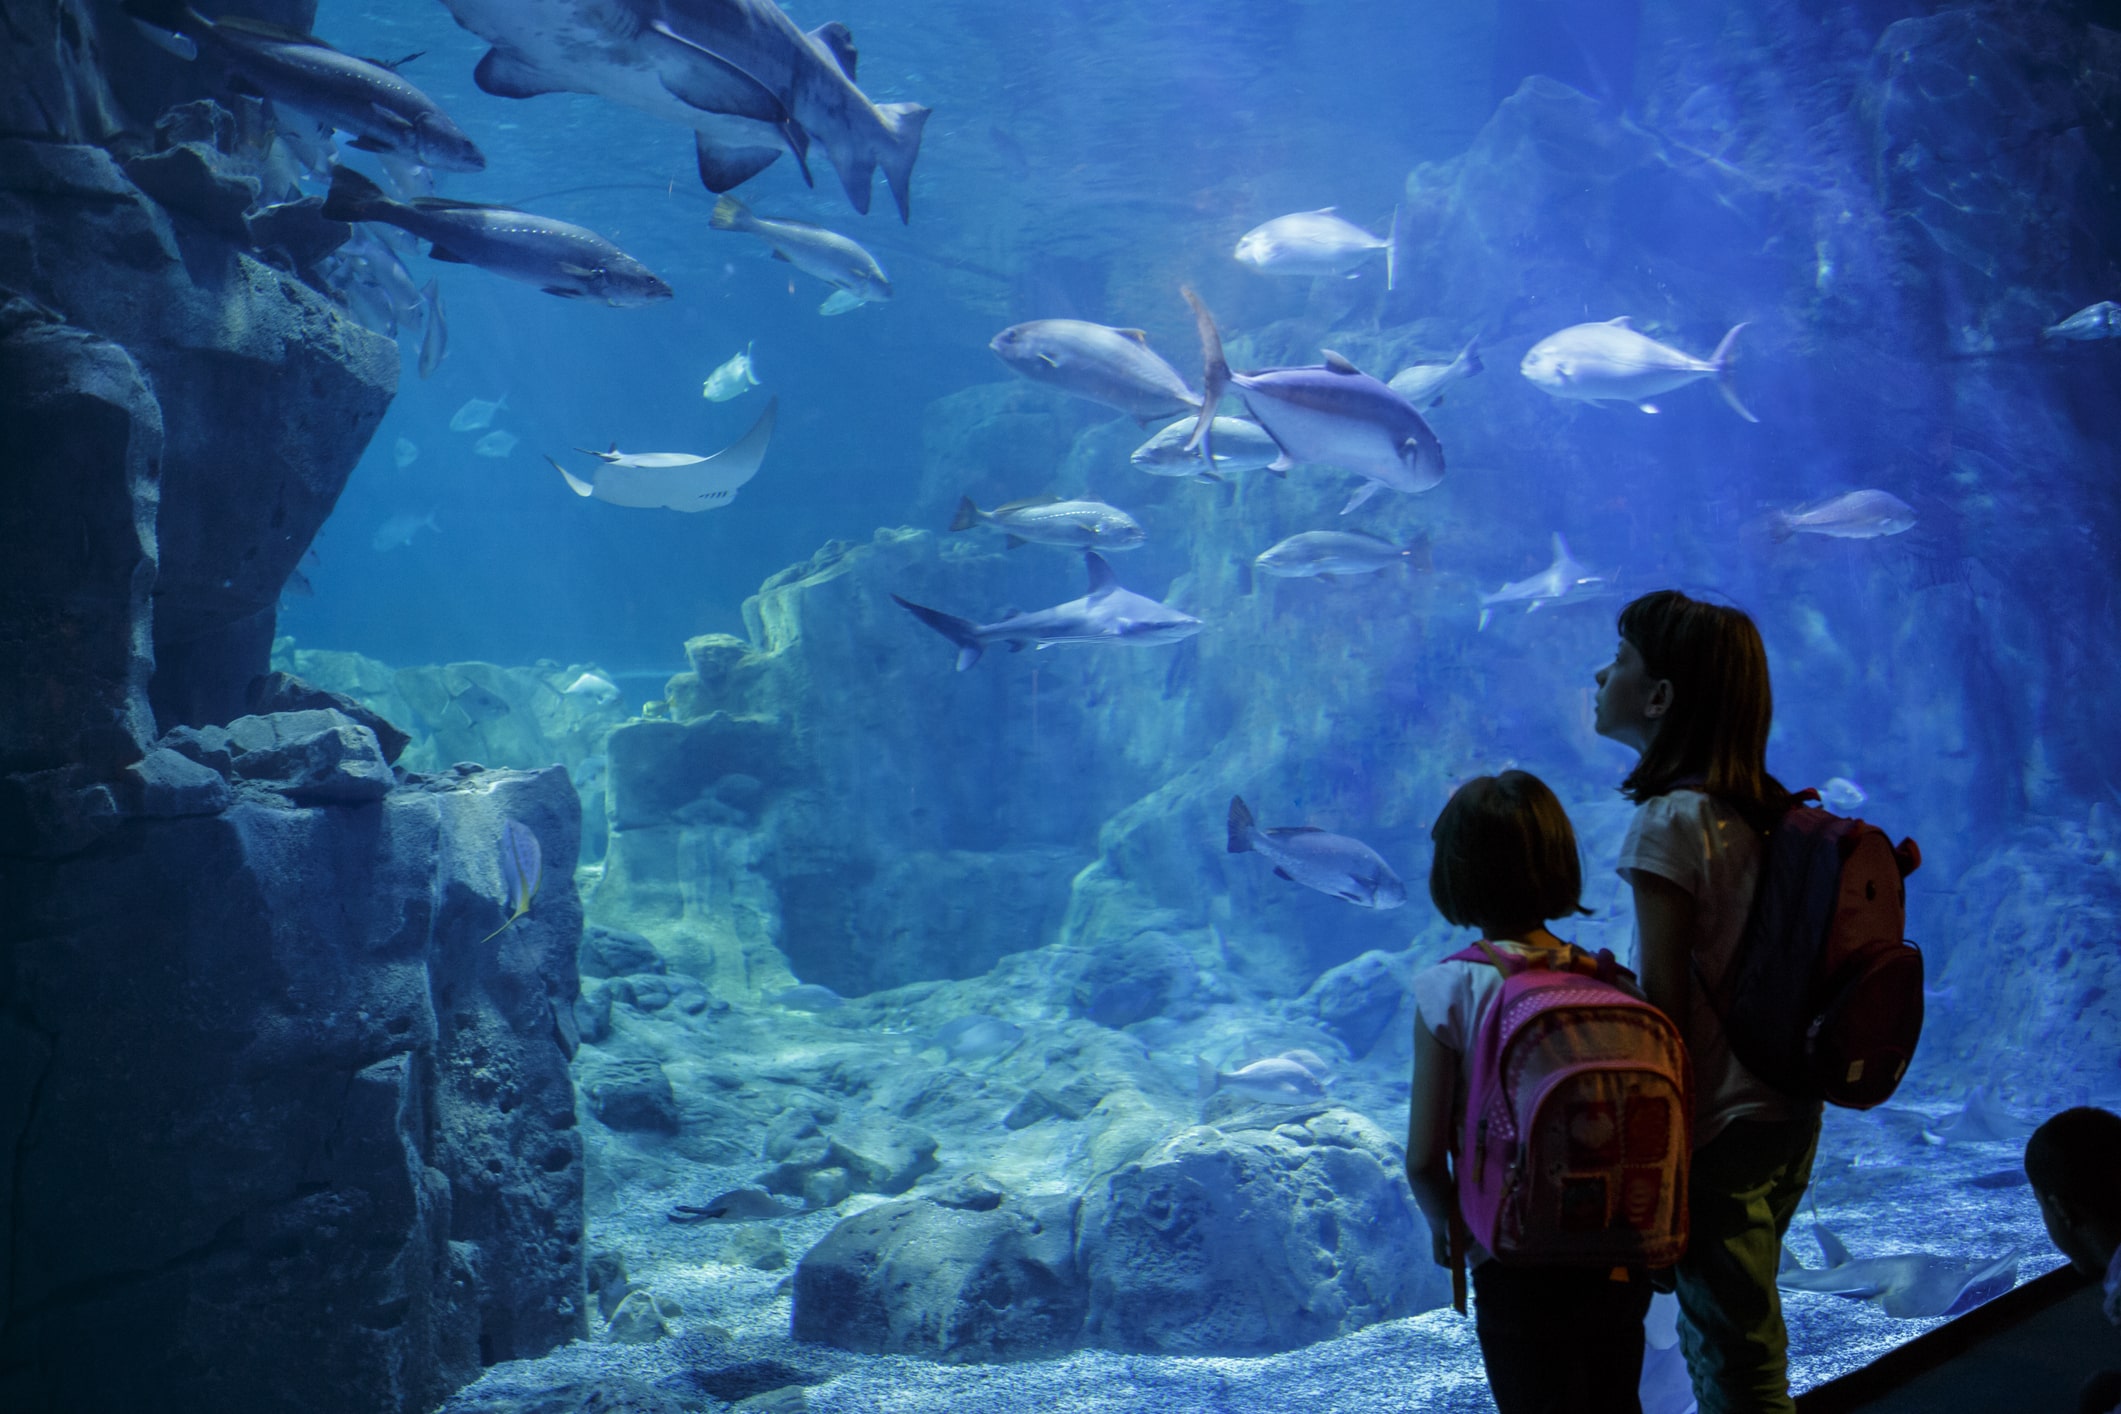 Children observing sealife at an aquarium.